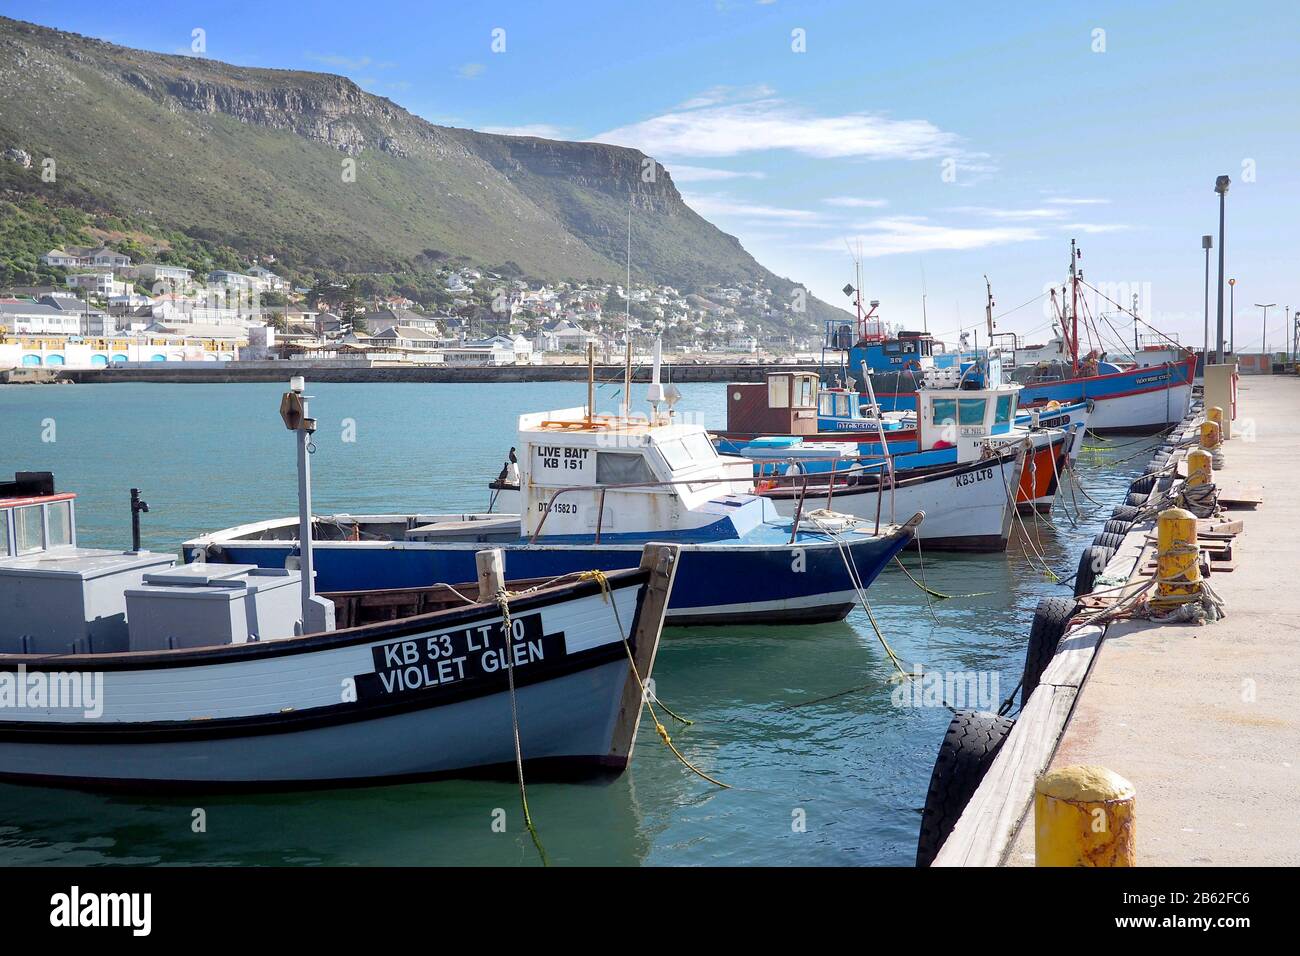 Hafen von Kalk Bay, Kapstadt, Südafrika - 16. Mai 2019: Traditionelle Fischerboote aus Holz werden in einem kleinen Hafen in Kapstadt, Südafrika, vermauert Stockfoto